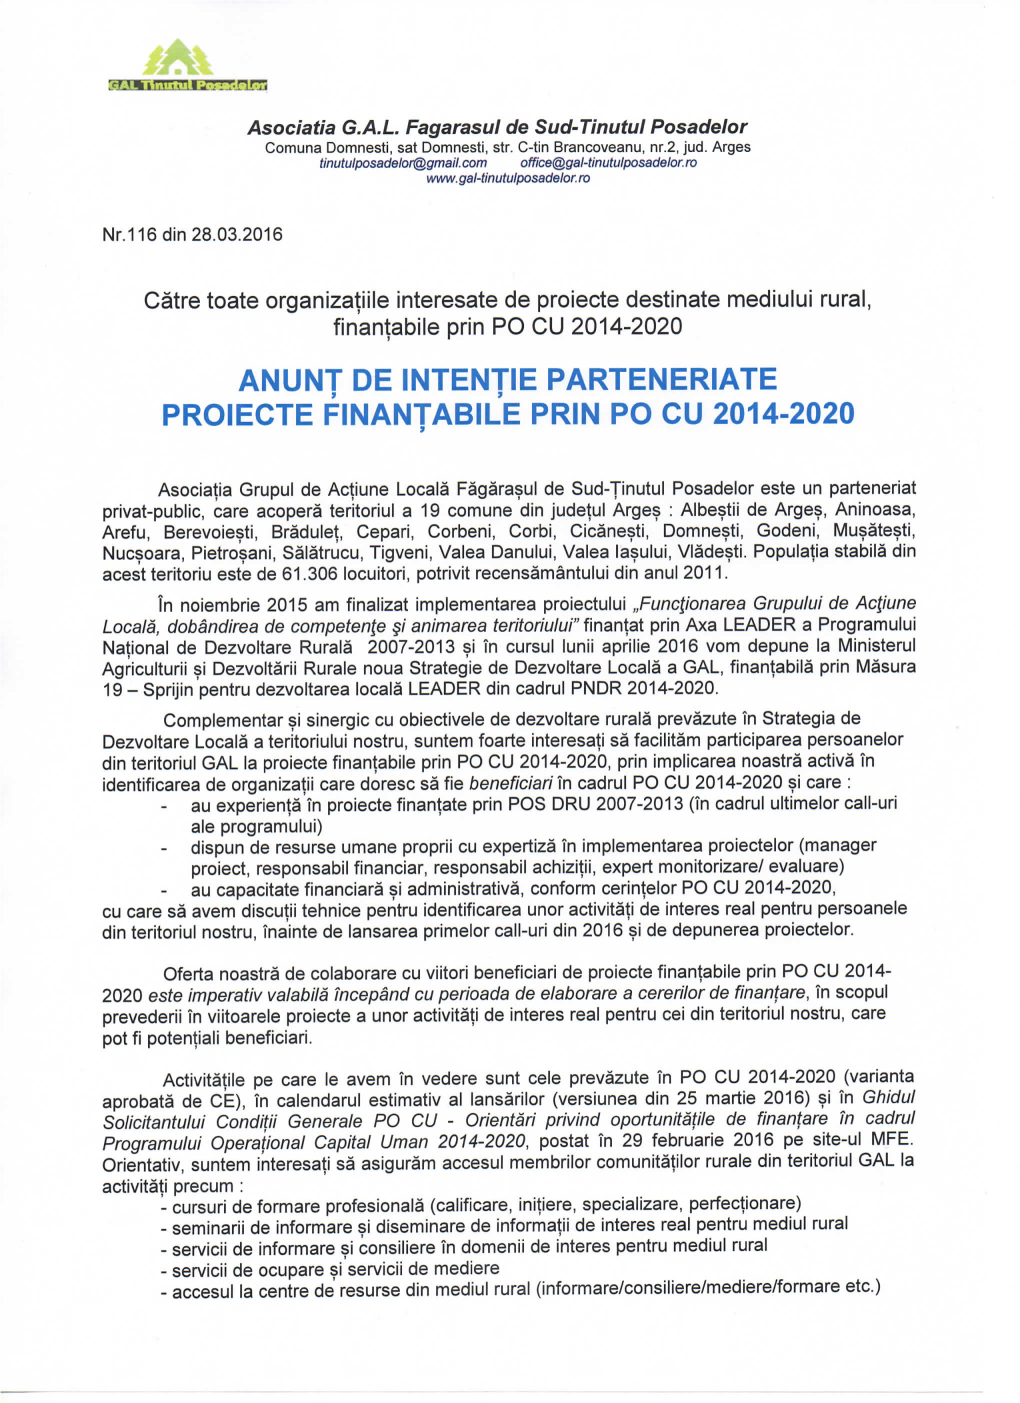 Anunt De Intentie Parteneriate Proiecte Finantabile Prin Po Cu 2014-2020